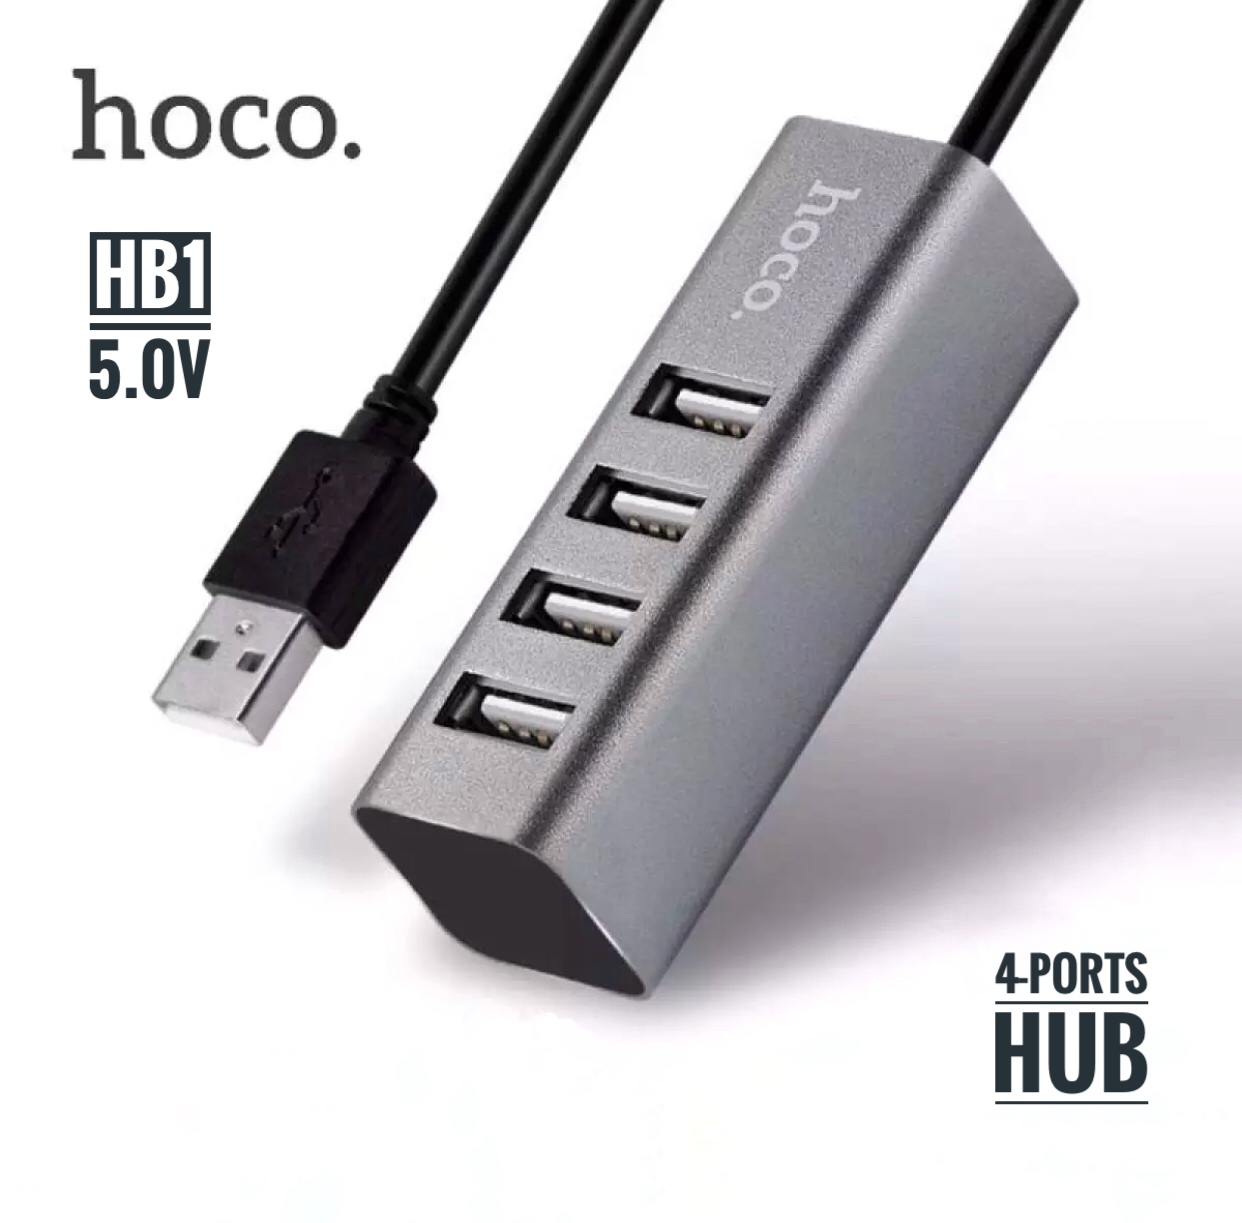 HOCO HB1 4 Port USB HUB 5.0V เพิ่มช่องเสียบ USB สายยาว 80 mm USB 2.0